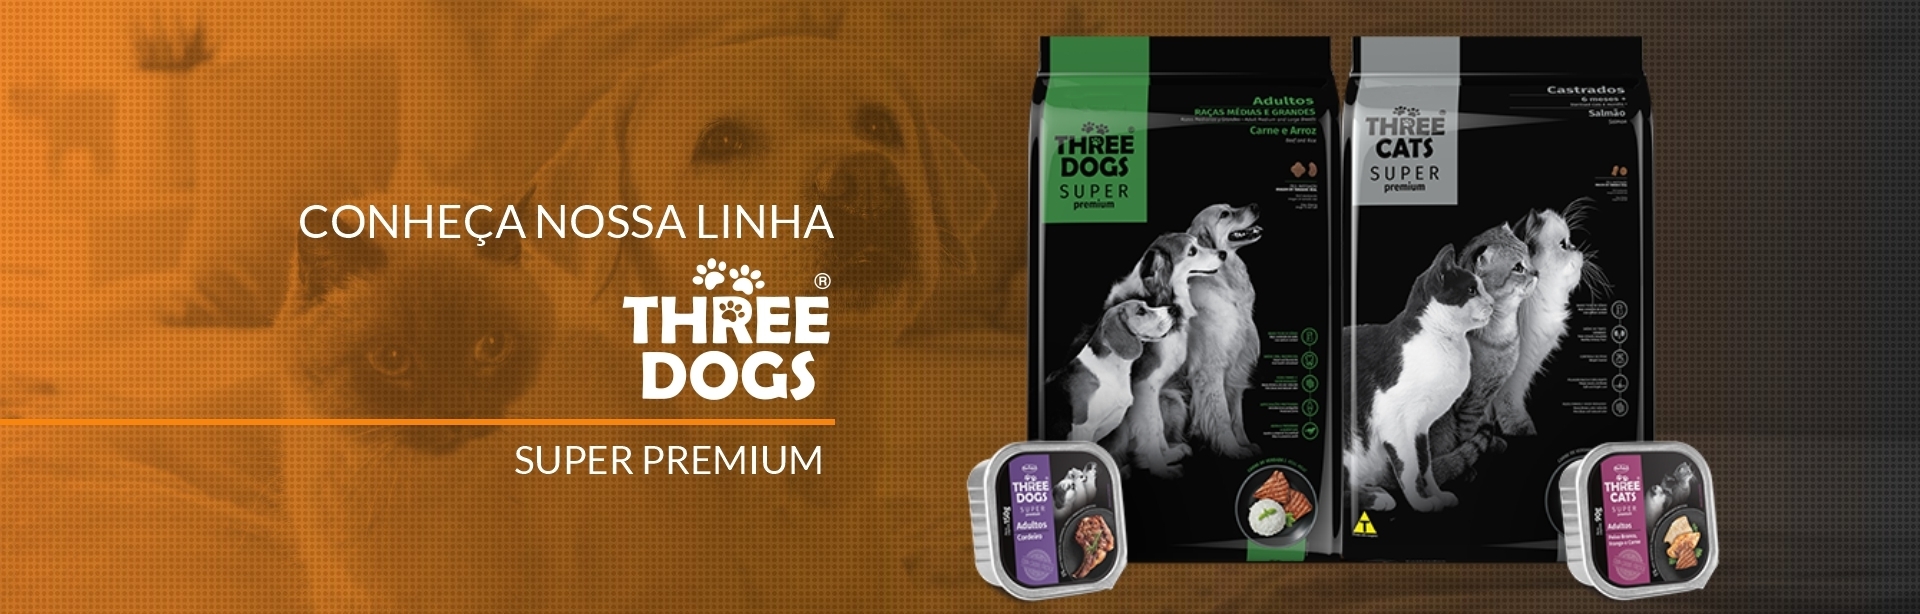 Three Dogs Super Premium